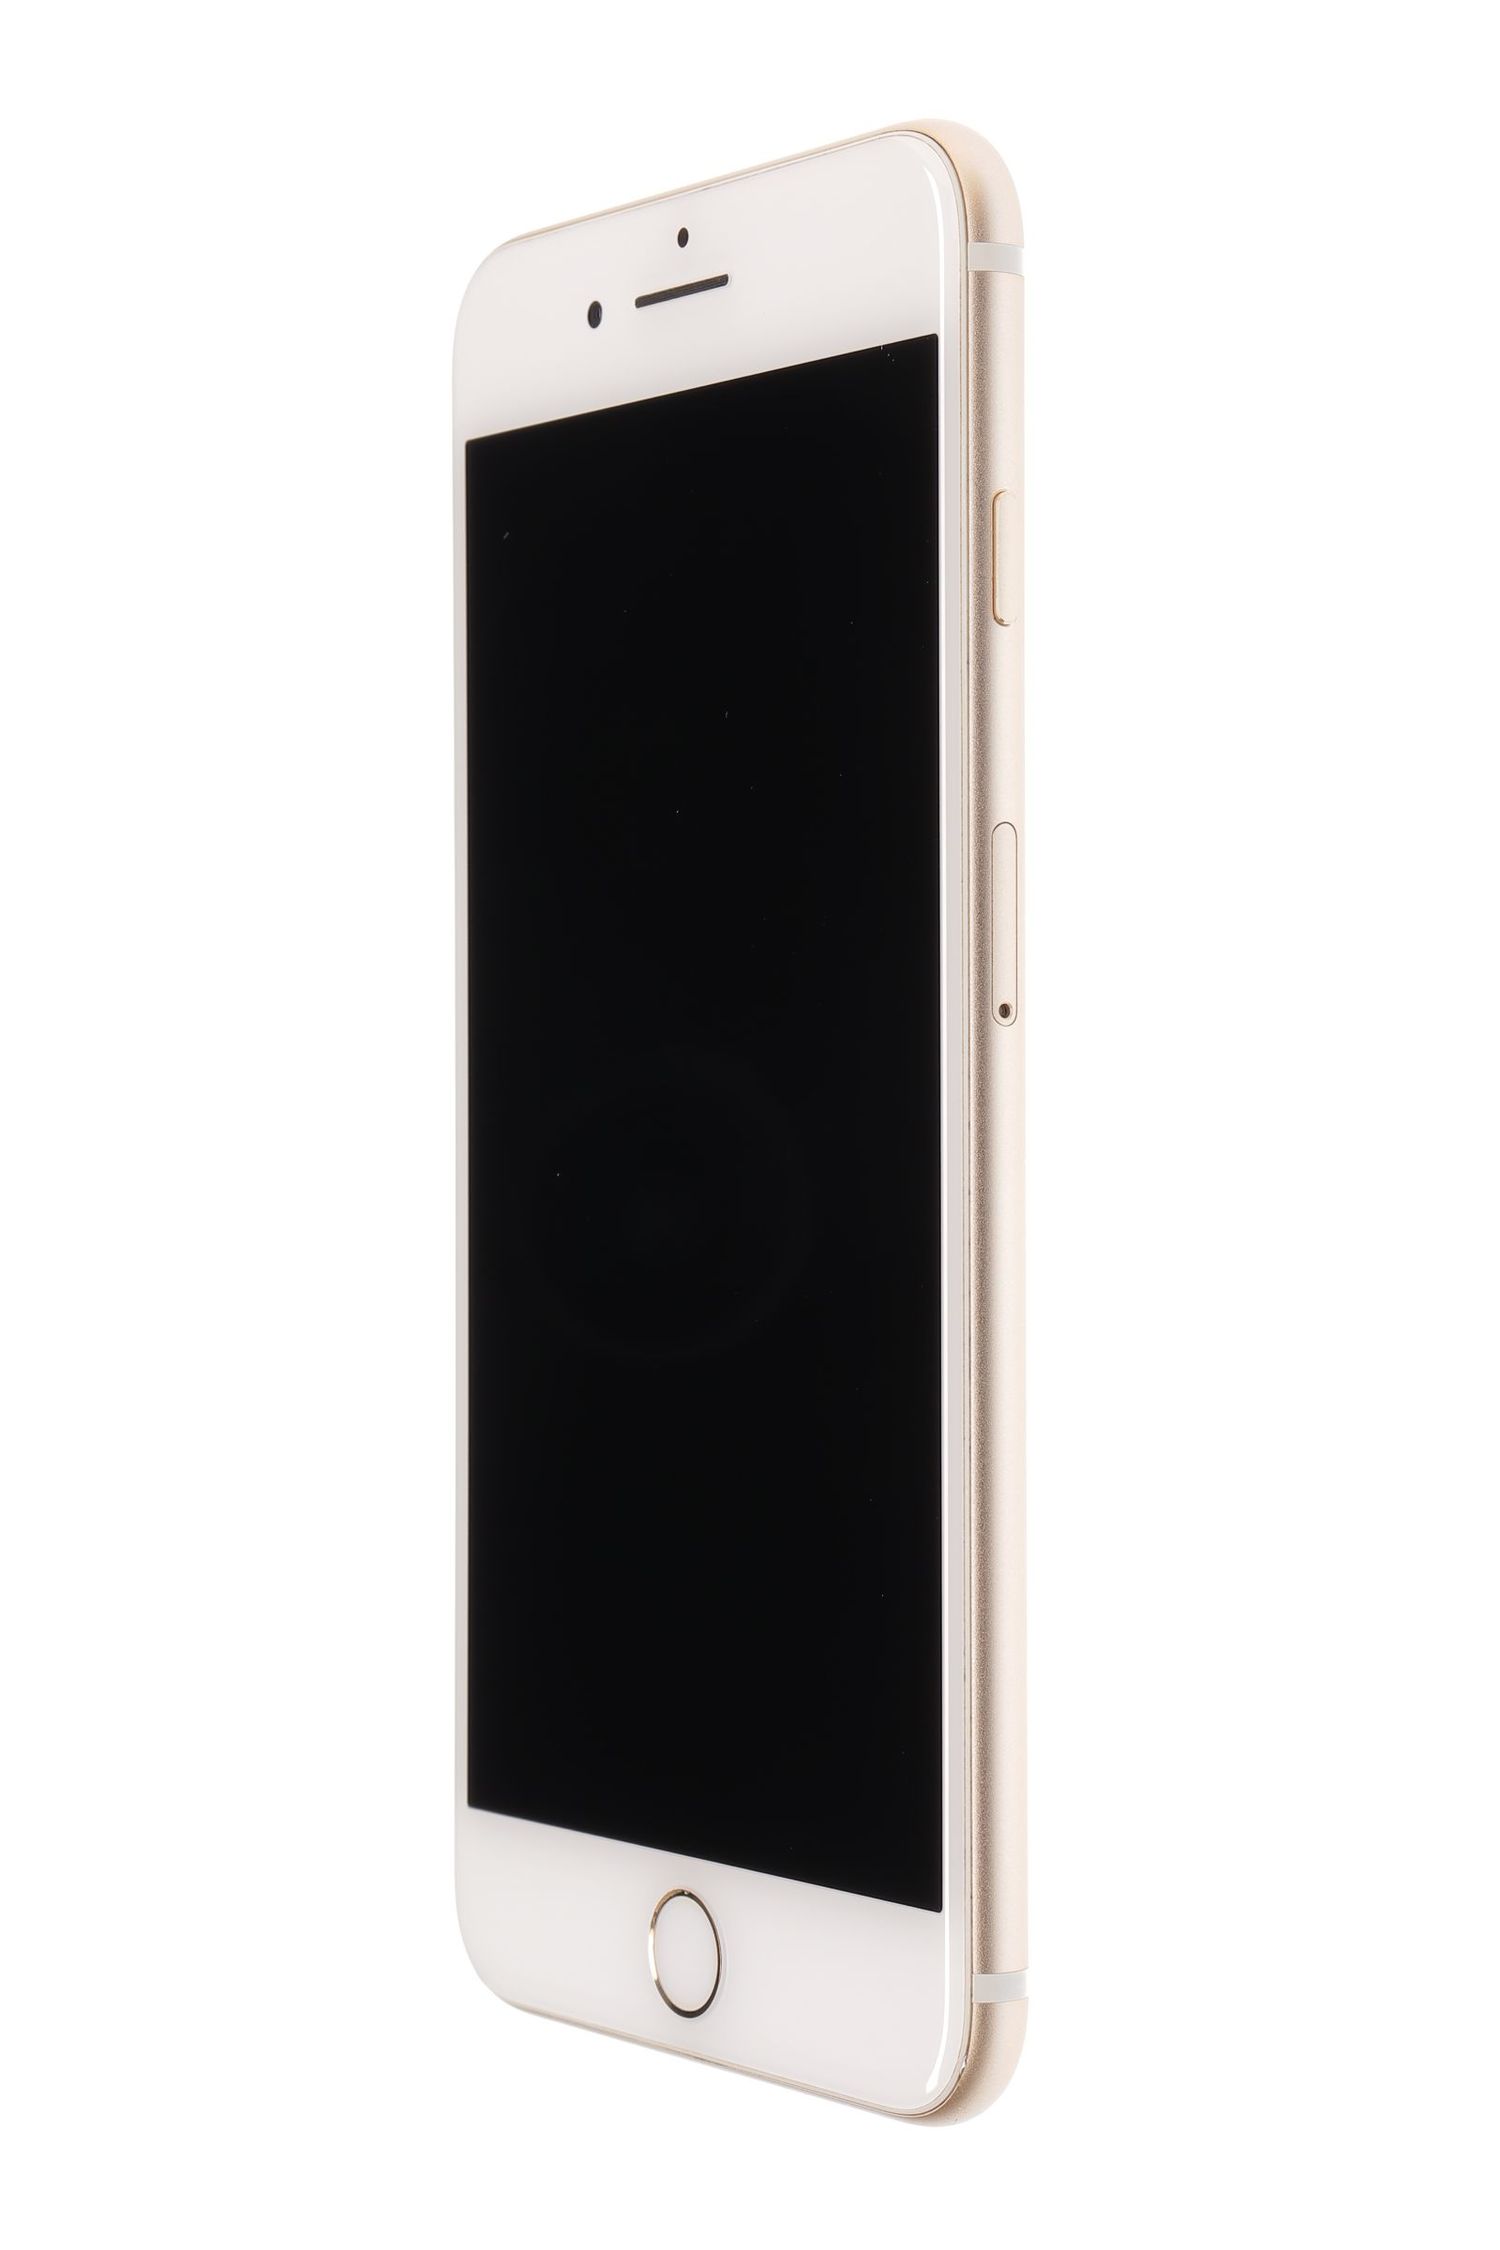 Мобилен телефон Apple iPhone 7 Plus, Gold, 32 GB, Excelent